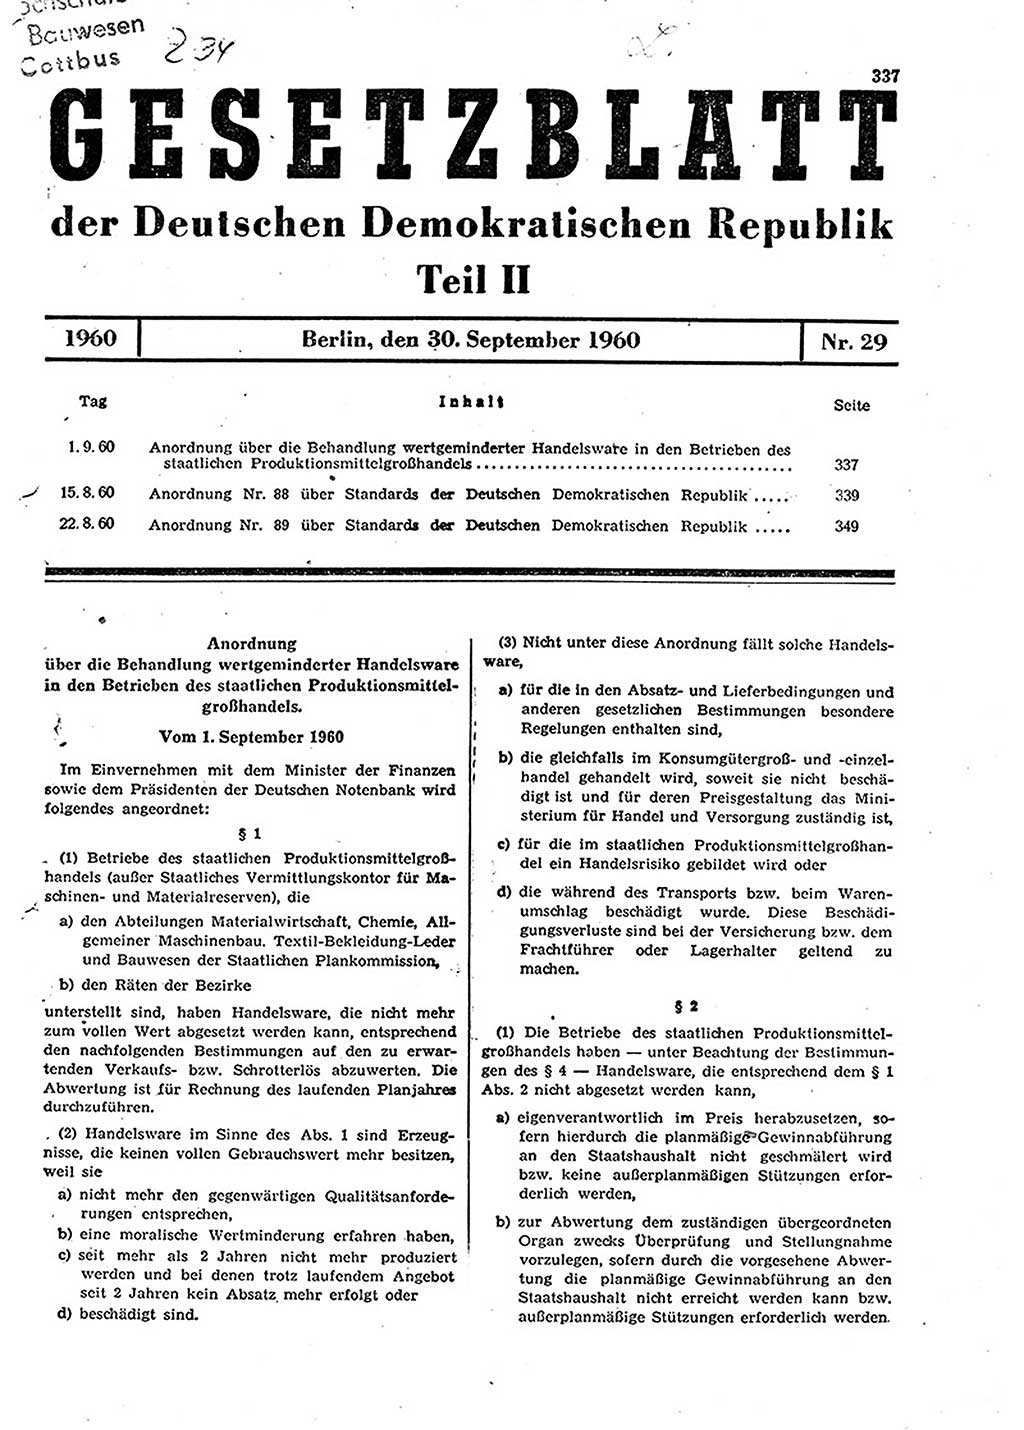 Gesetzblatt (GBl.) der Deutschen Demokratischen Republik (DDR) Teil ⅠⅠ 1960, Seite 337 (GBl. DDR ⅠⅠ 1960, S. 337)